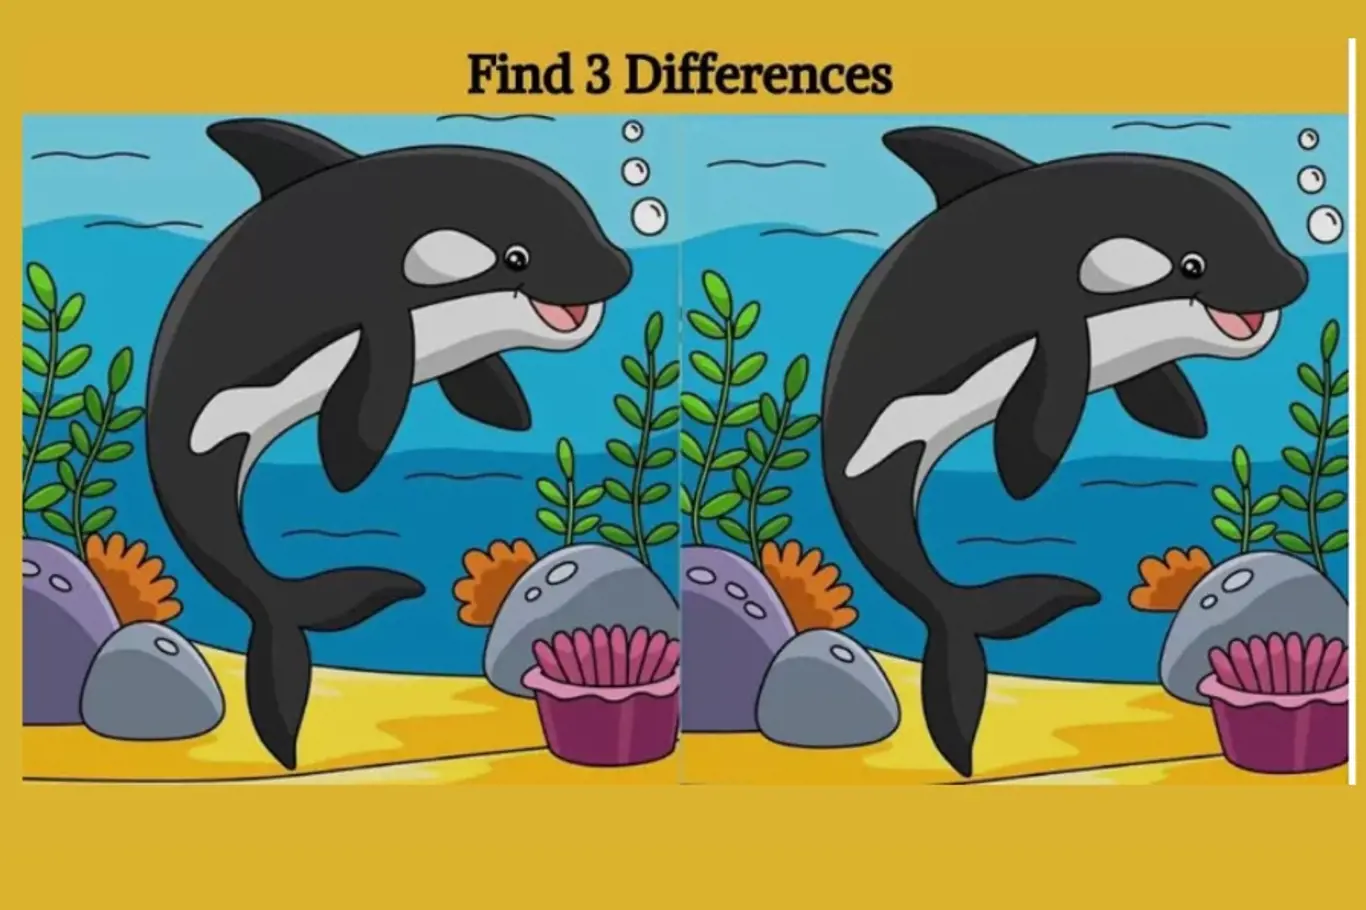 IQ výzva pro bystré: Najdi na obrázku delfínů 3 rozdíly